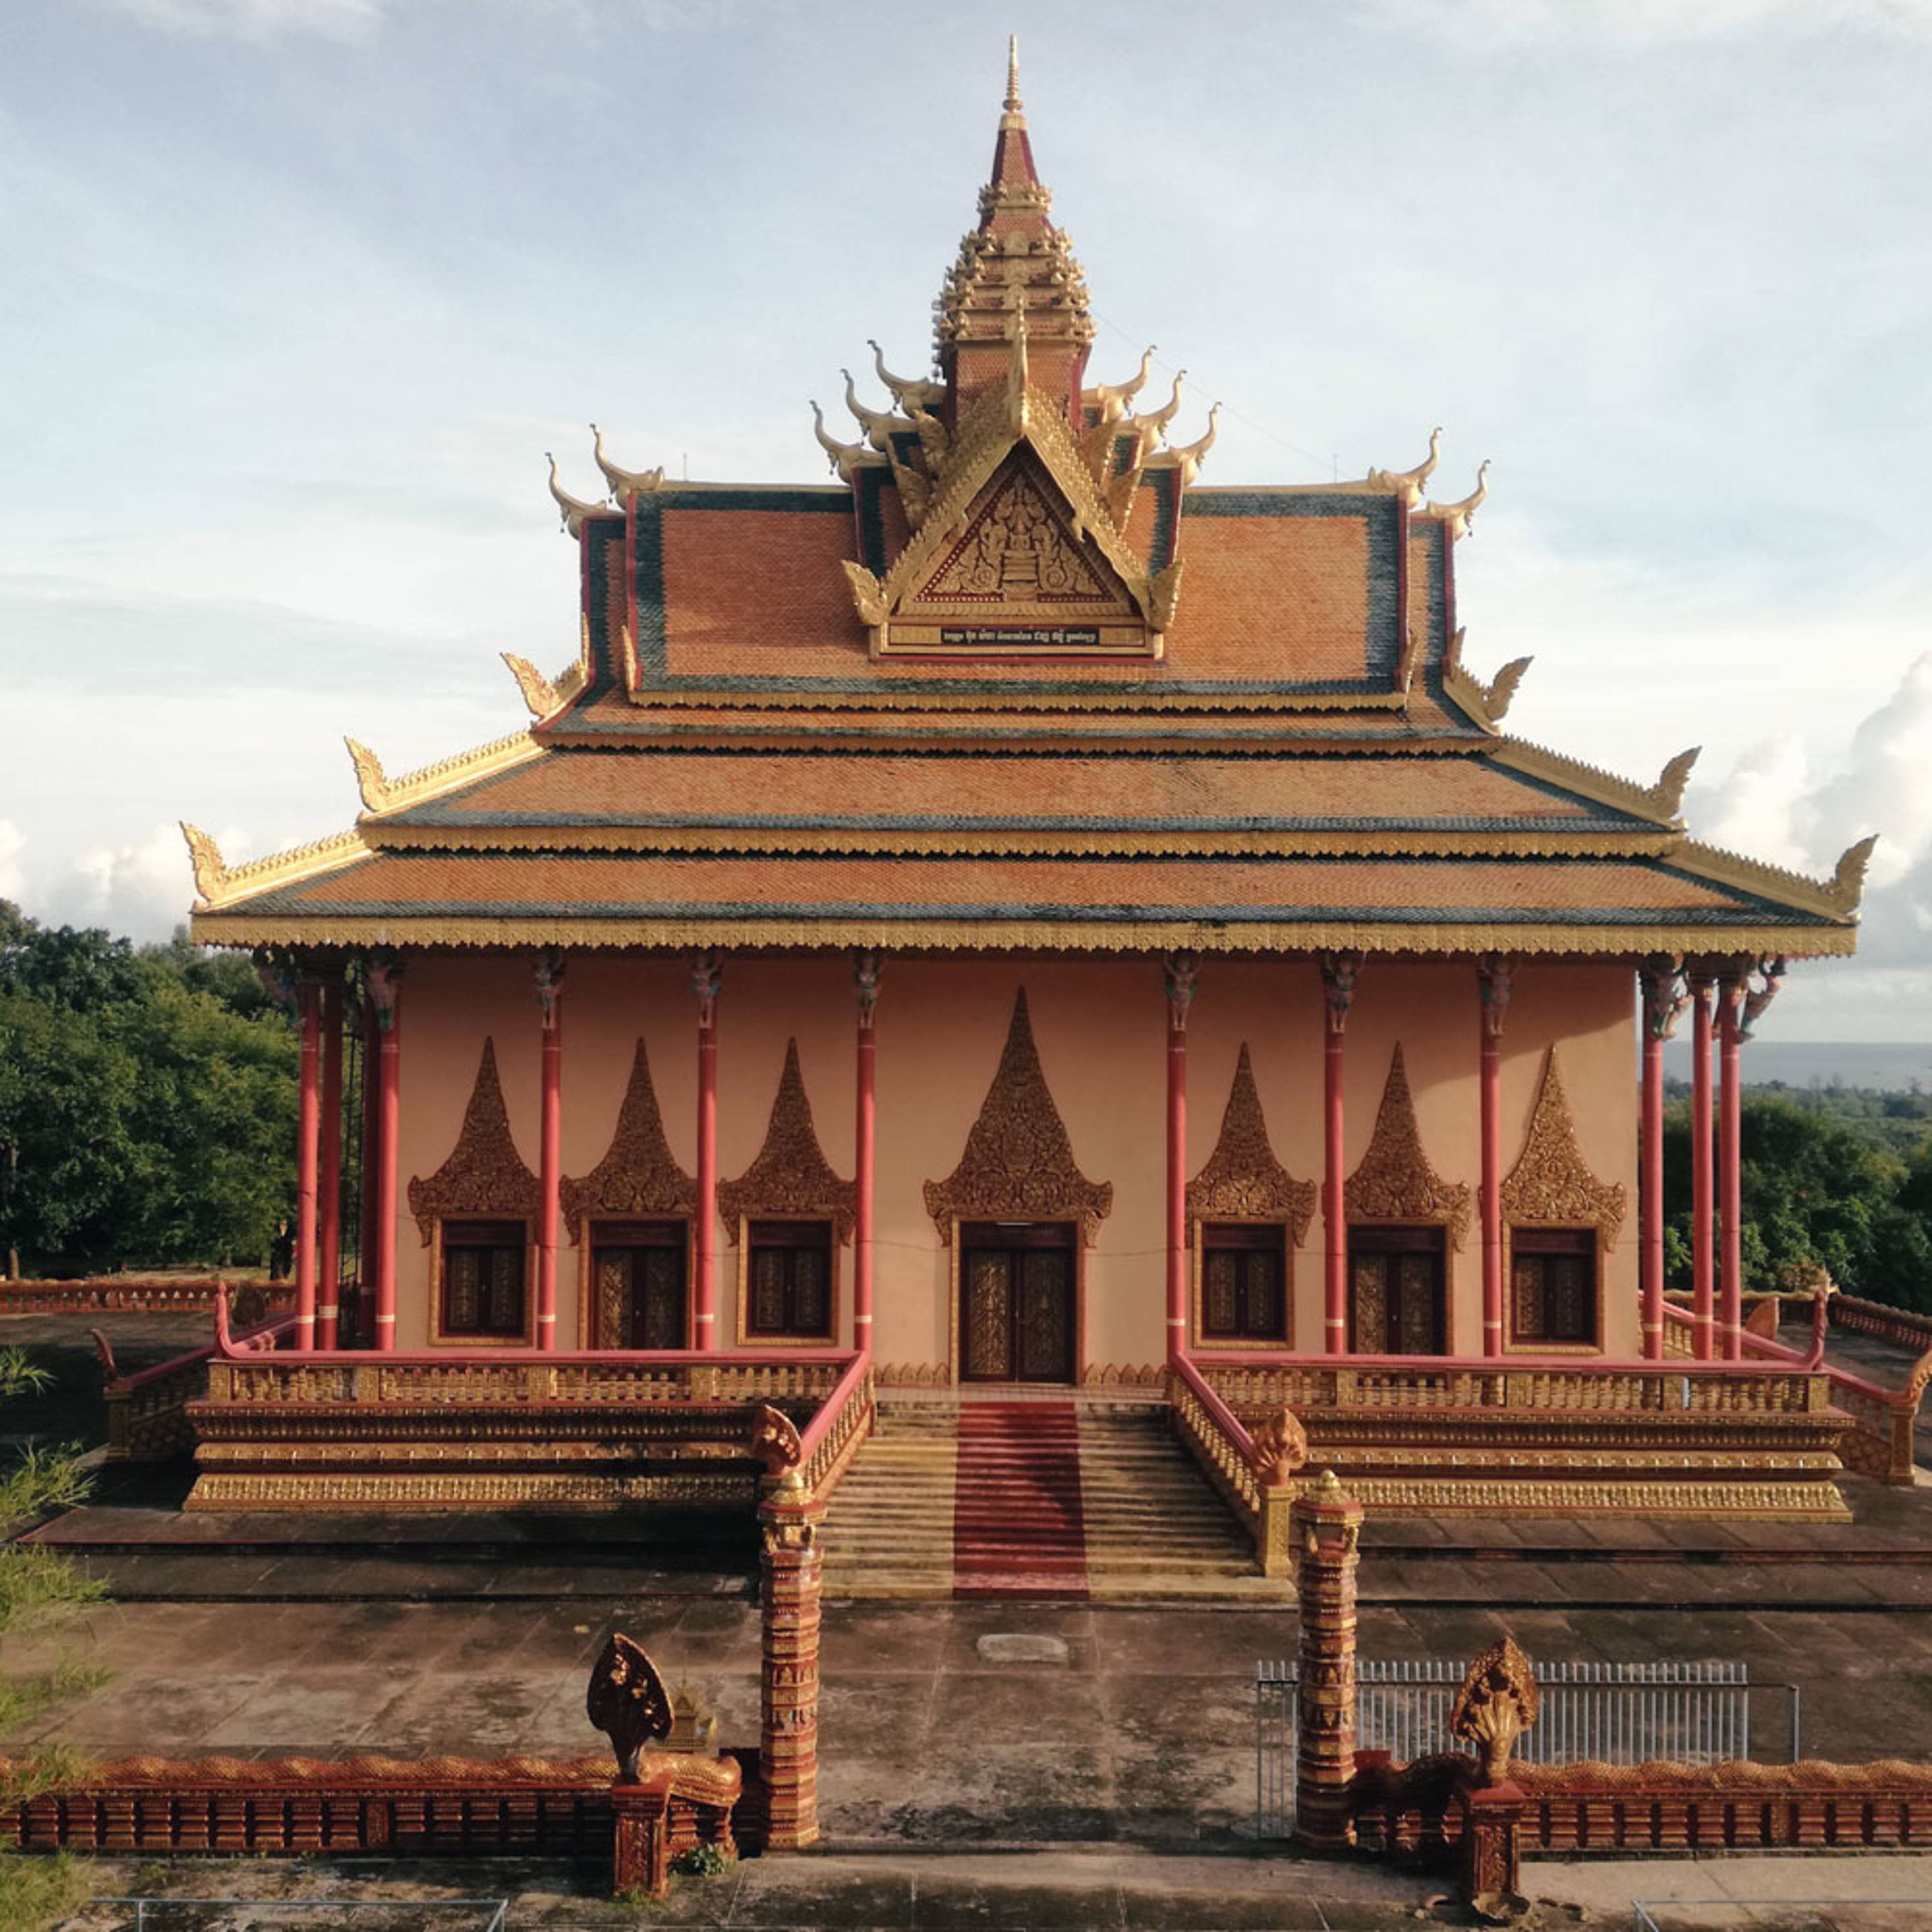 Zwei Wochen nach Kambodscha - Reise jetzt individuell gestalten